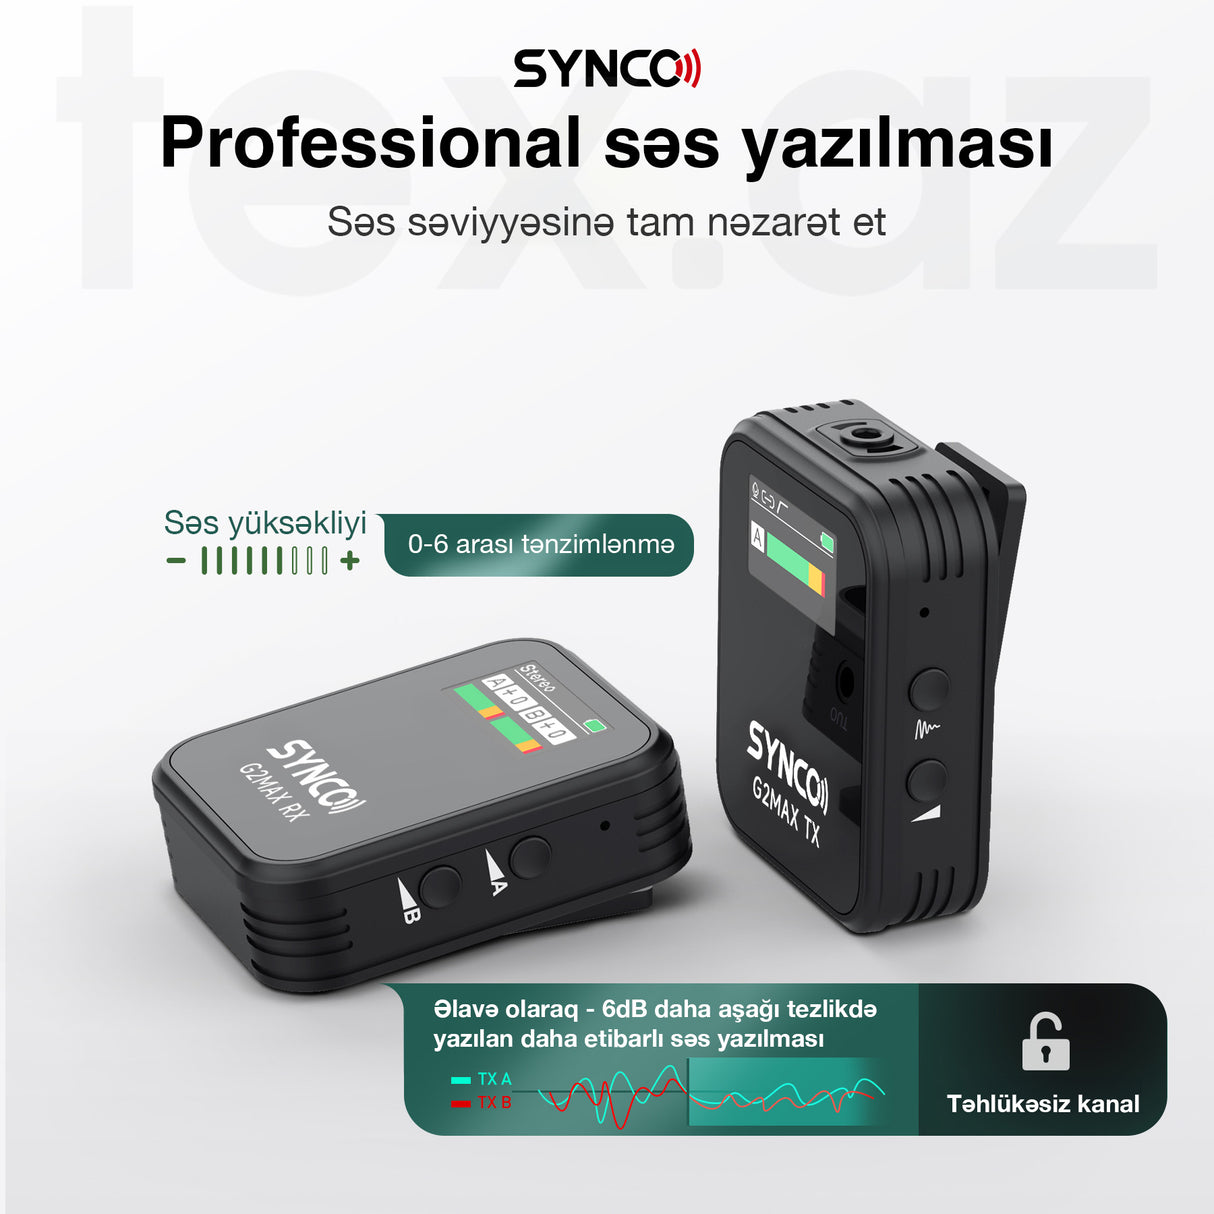 Synco G2 A1 Max